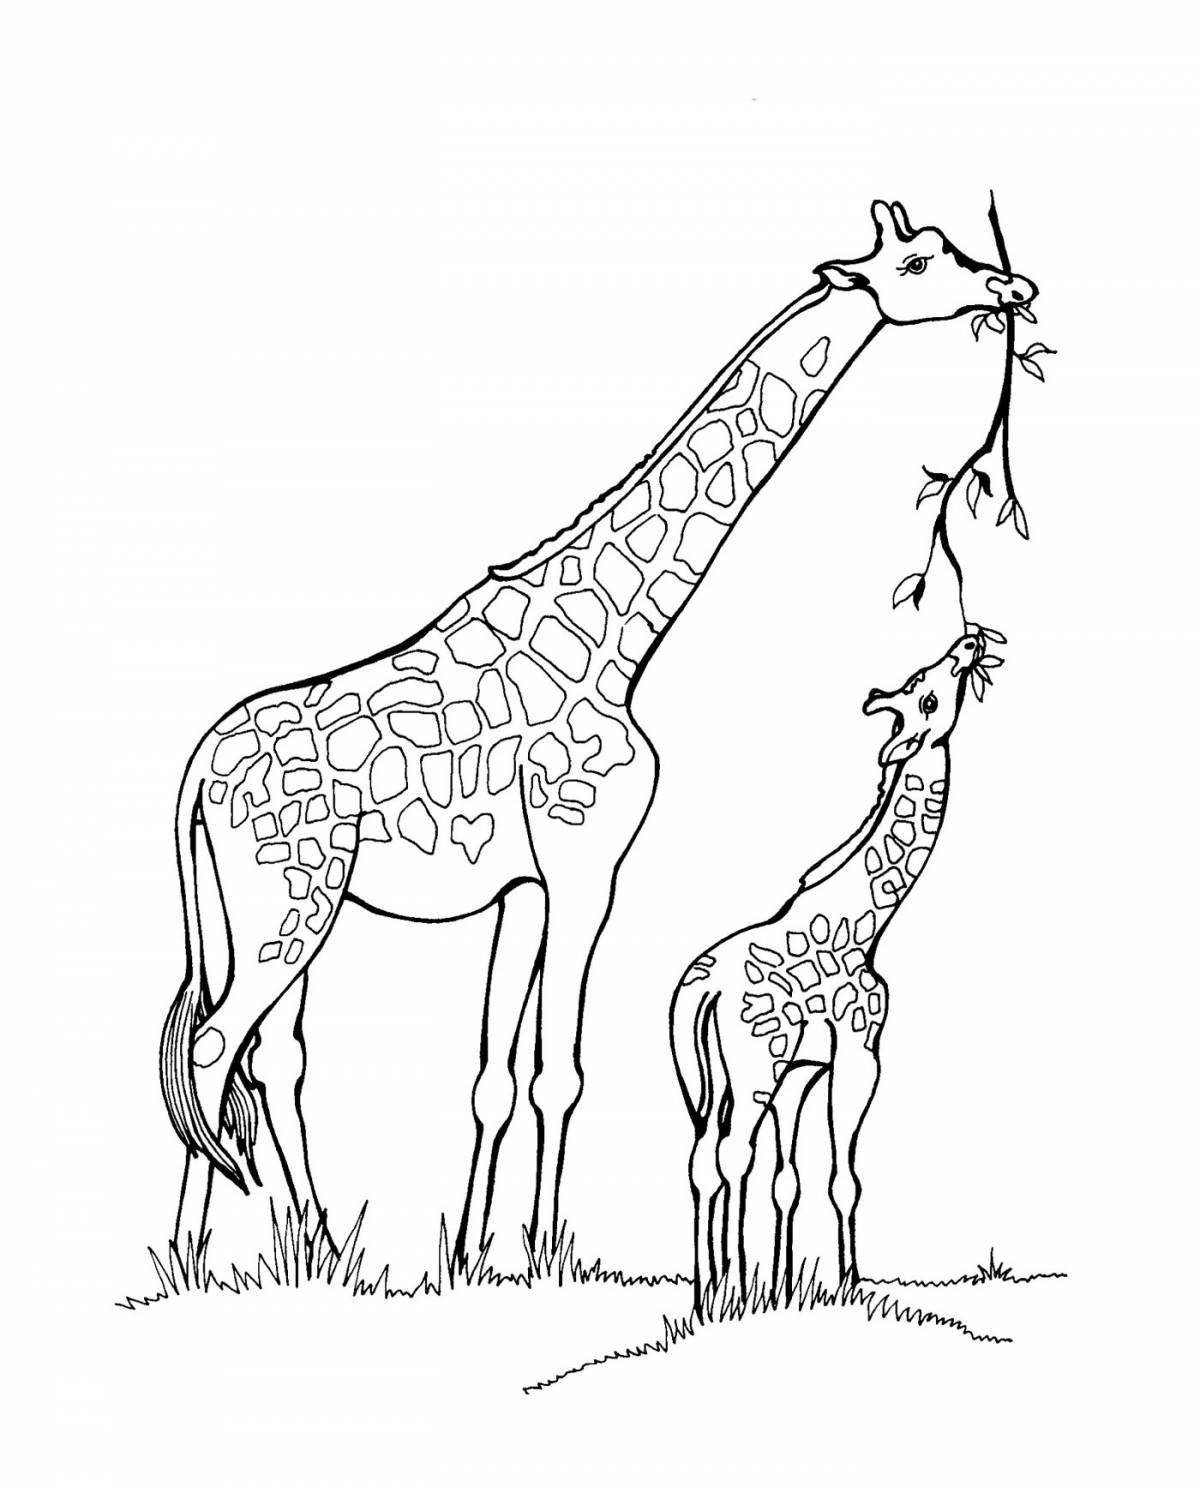 Incredible giraffe coloring book for kids